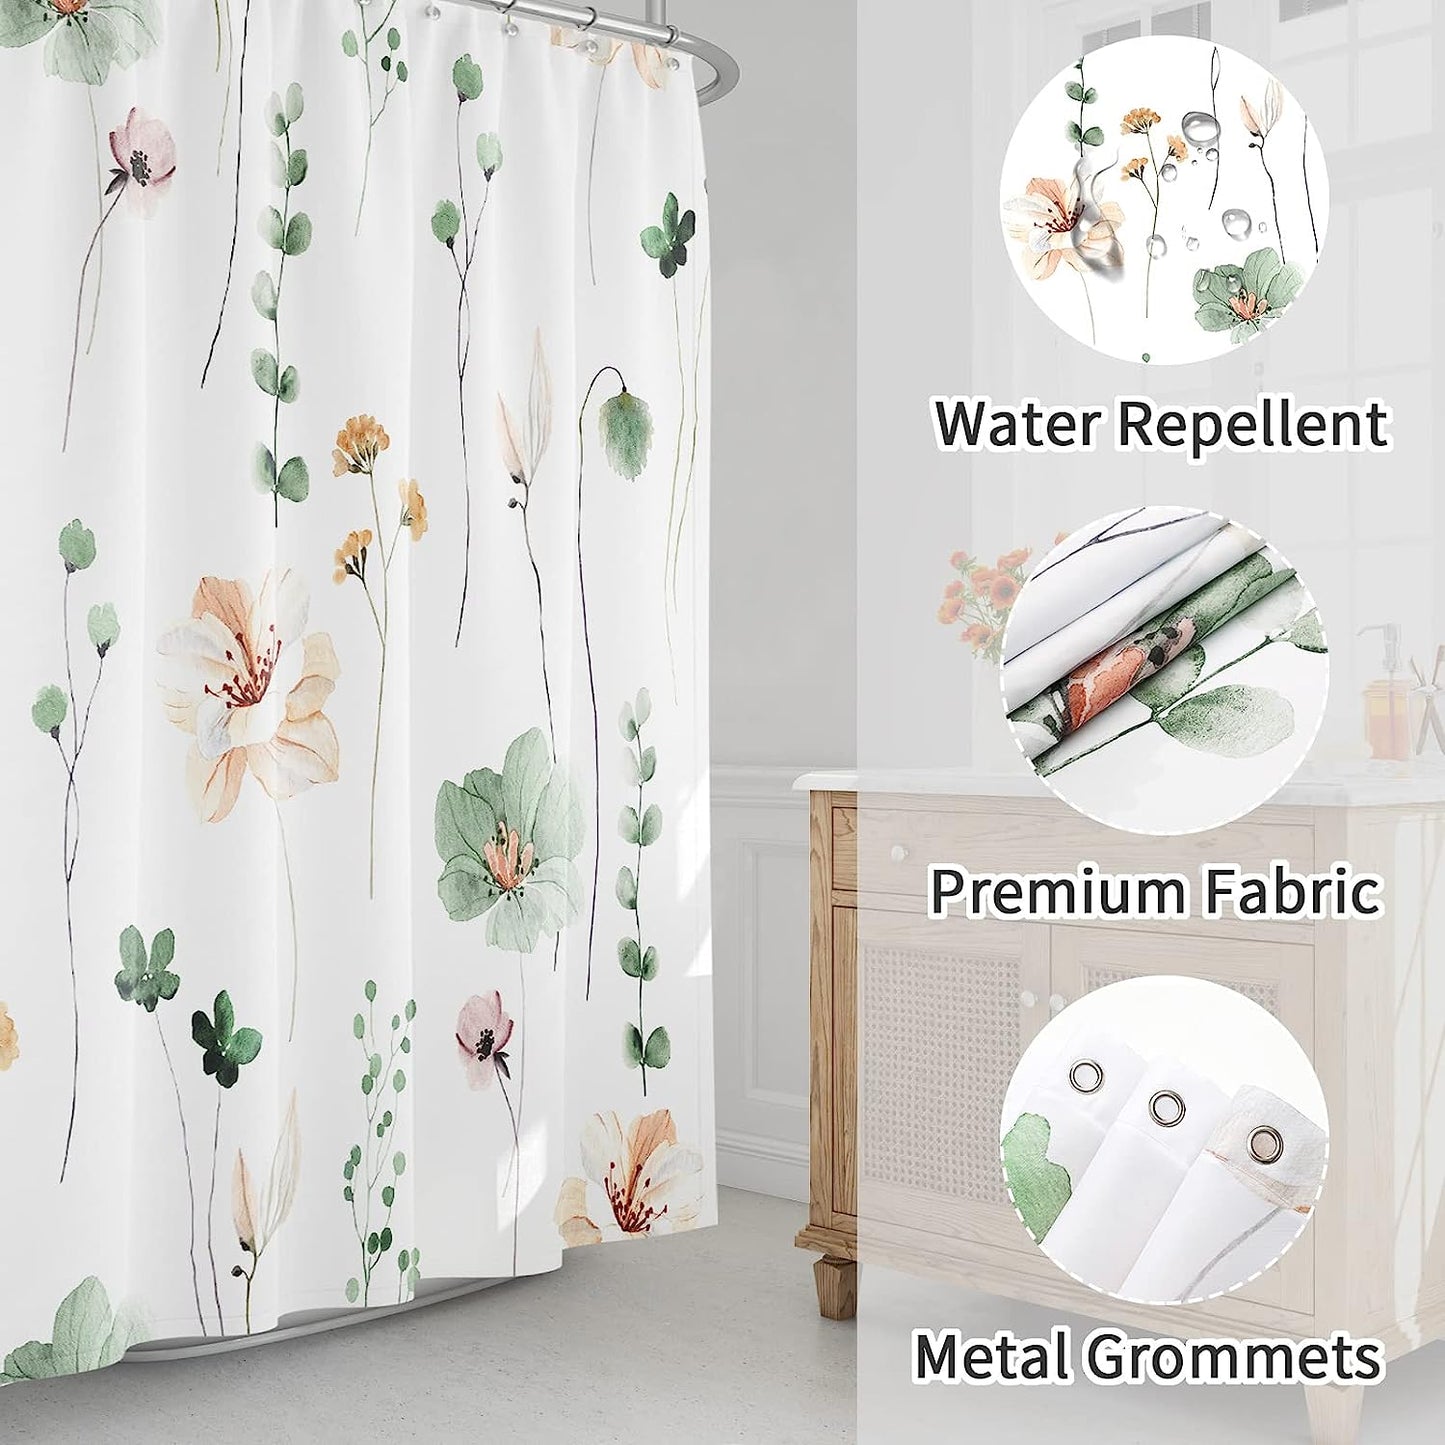 Shower Curtain, Sage, Green, & Beige Flowers, Modern Minimalist White with Hooks 72X72 Inch